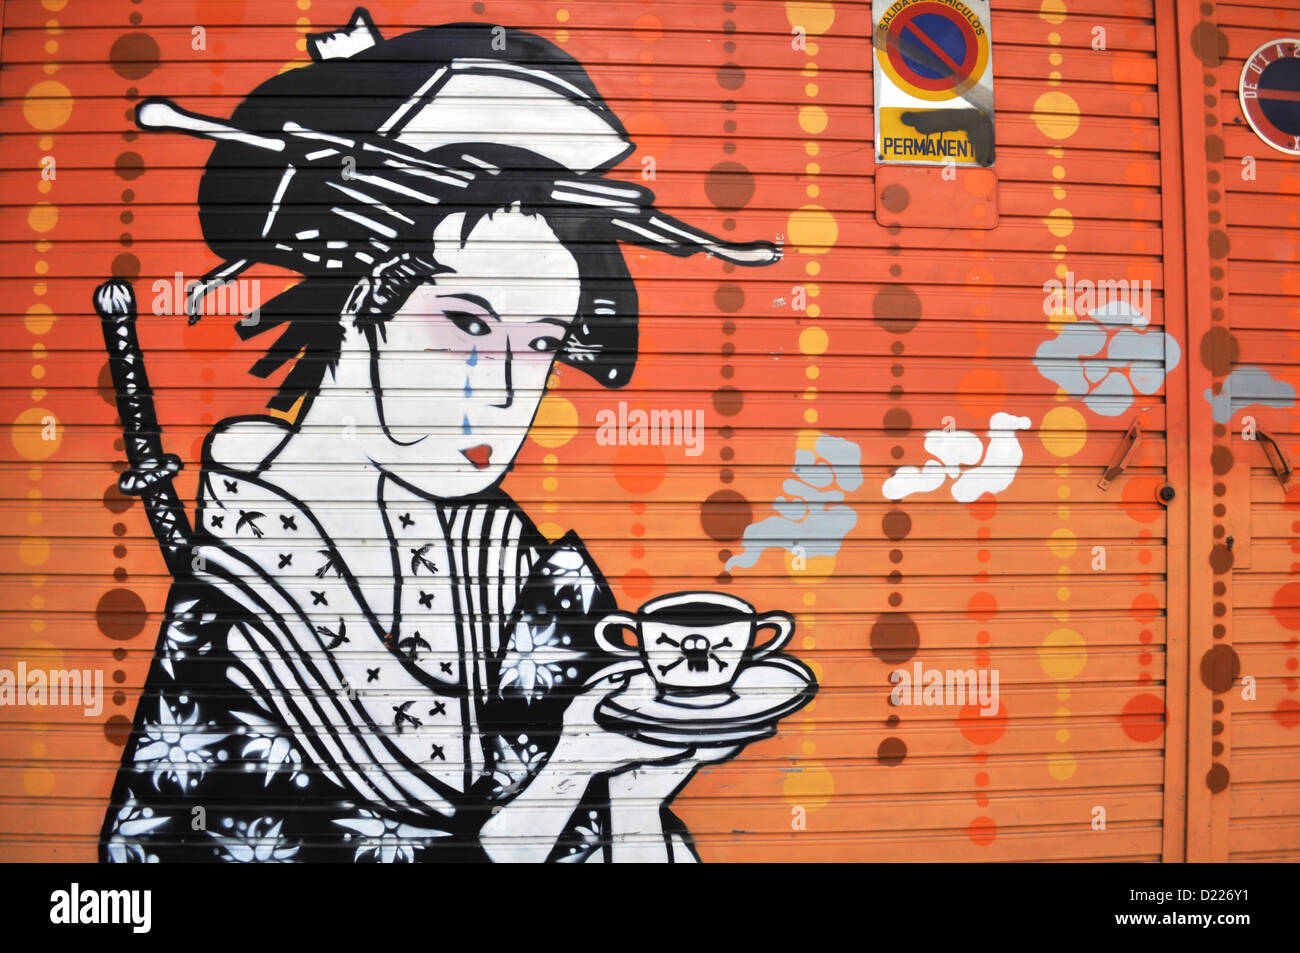 Valencia, Espagne : empoisonnement-graffiti geisha Banque D'Images